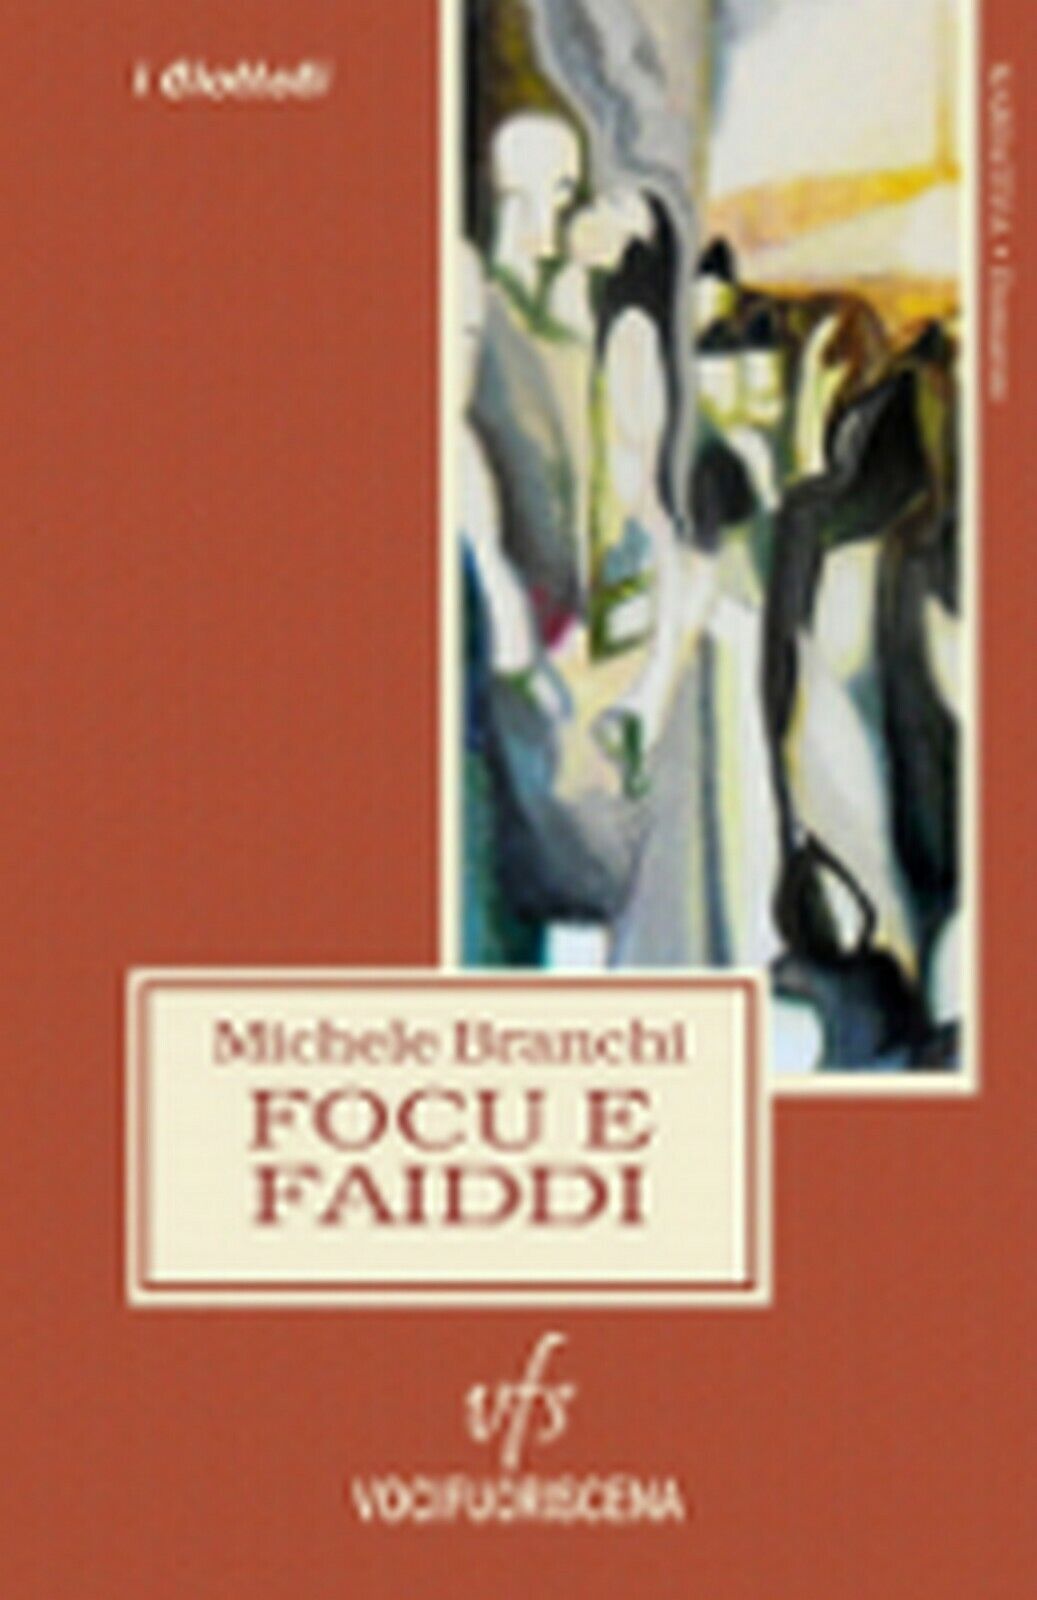 FOCU E FAIDDI  di Michele Branchi,  2018,  Vocifuoriscena